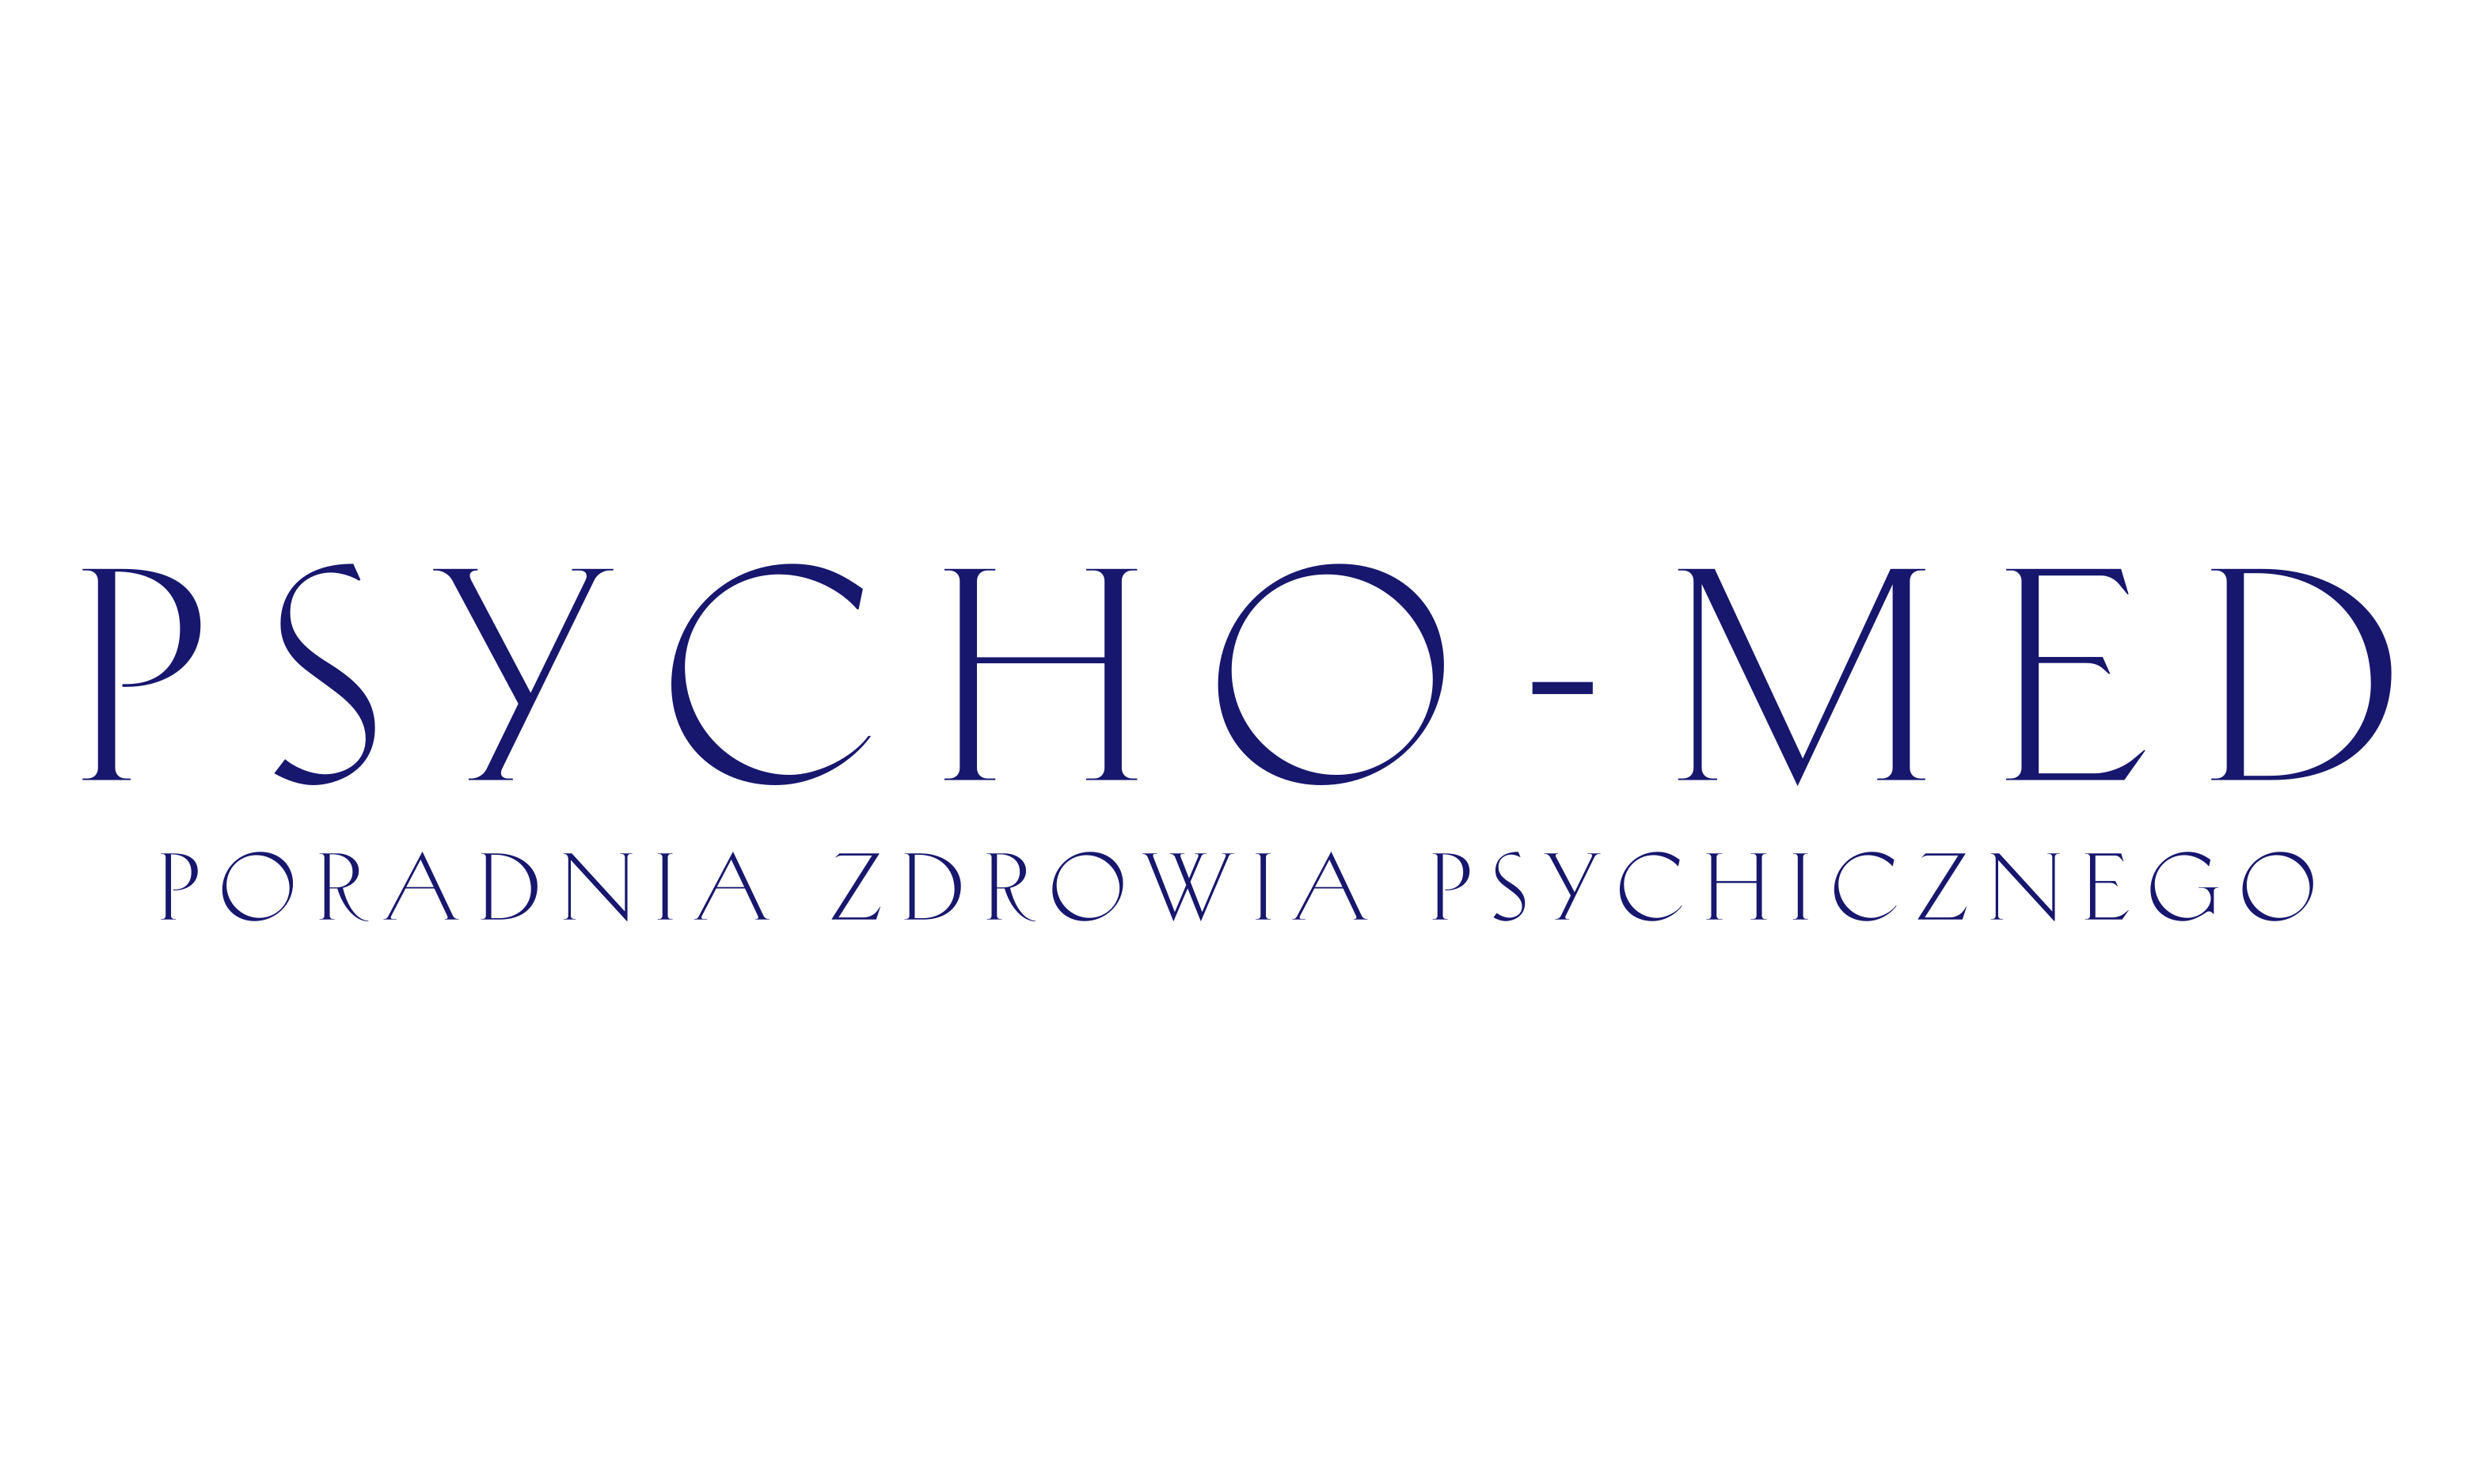 Psycho-med